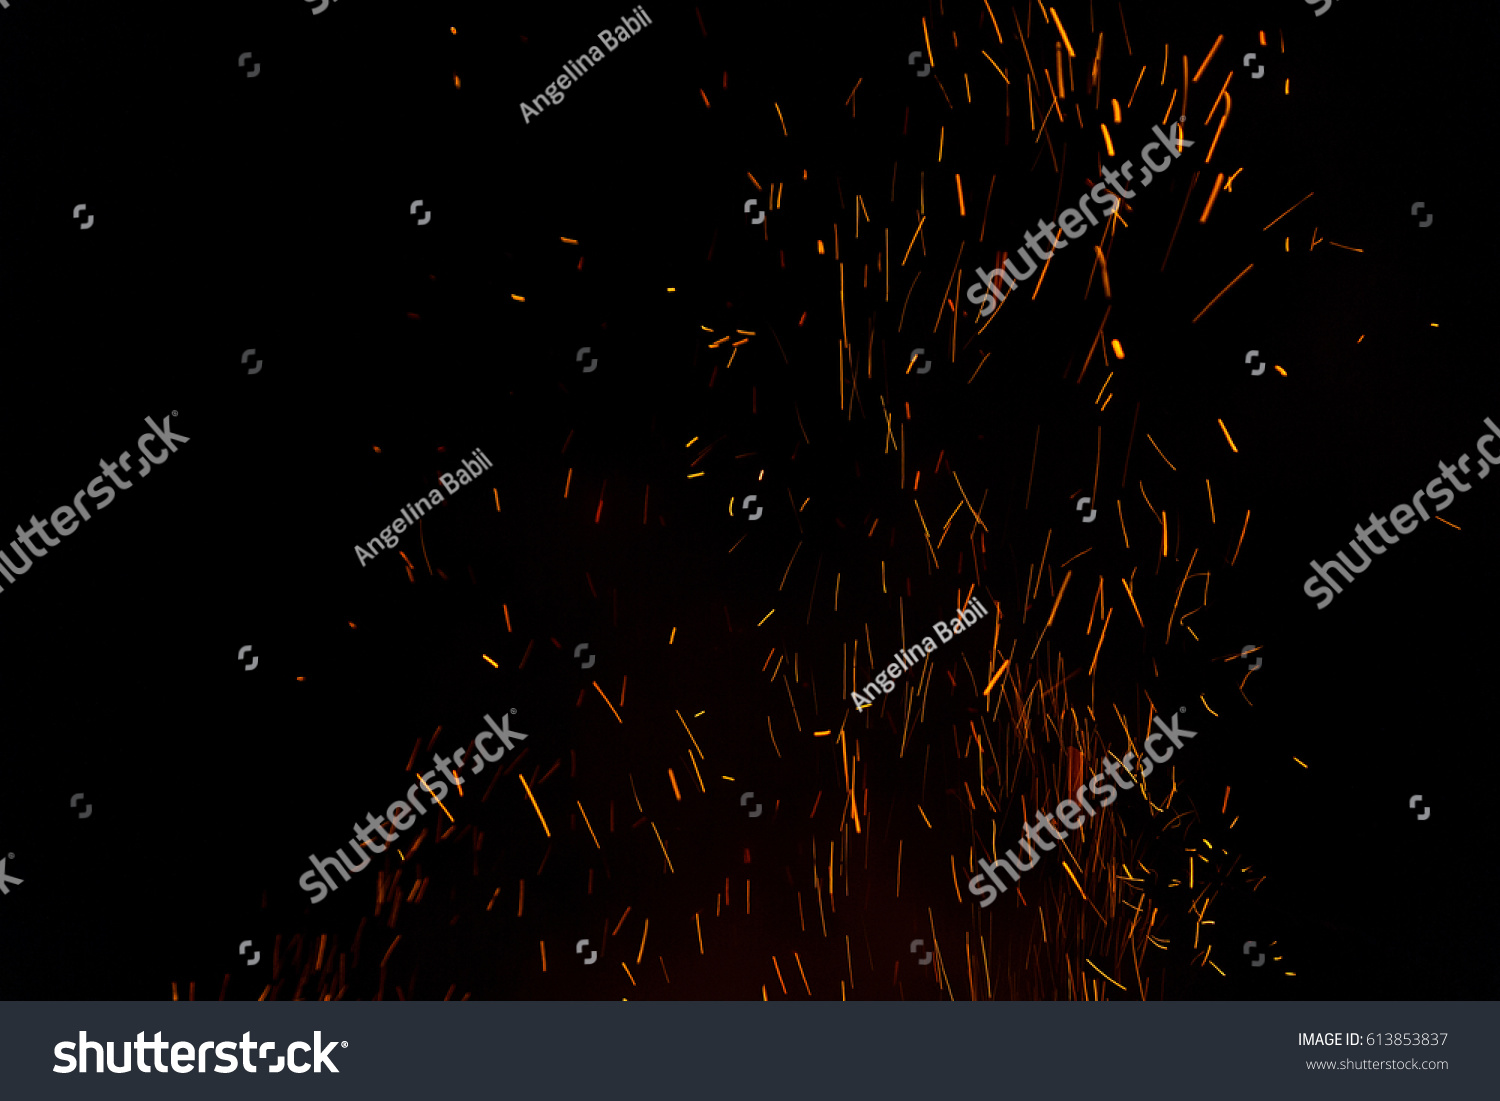 Photo of hot sparking live-coals burning, spark of bonfire. #613853837